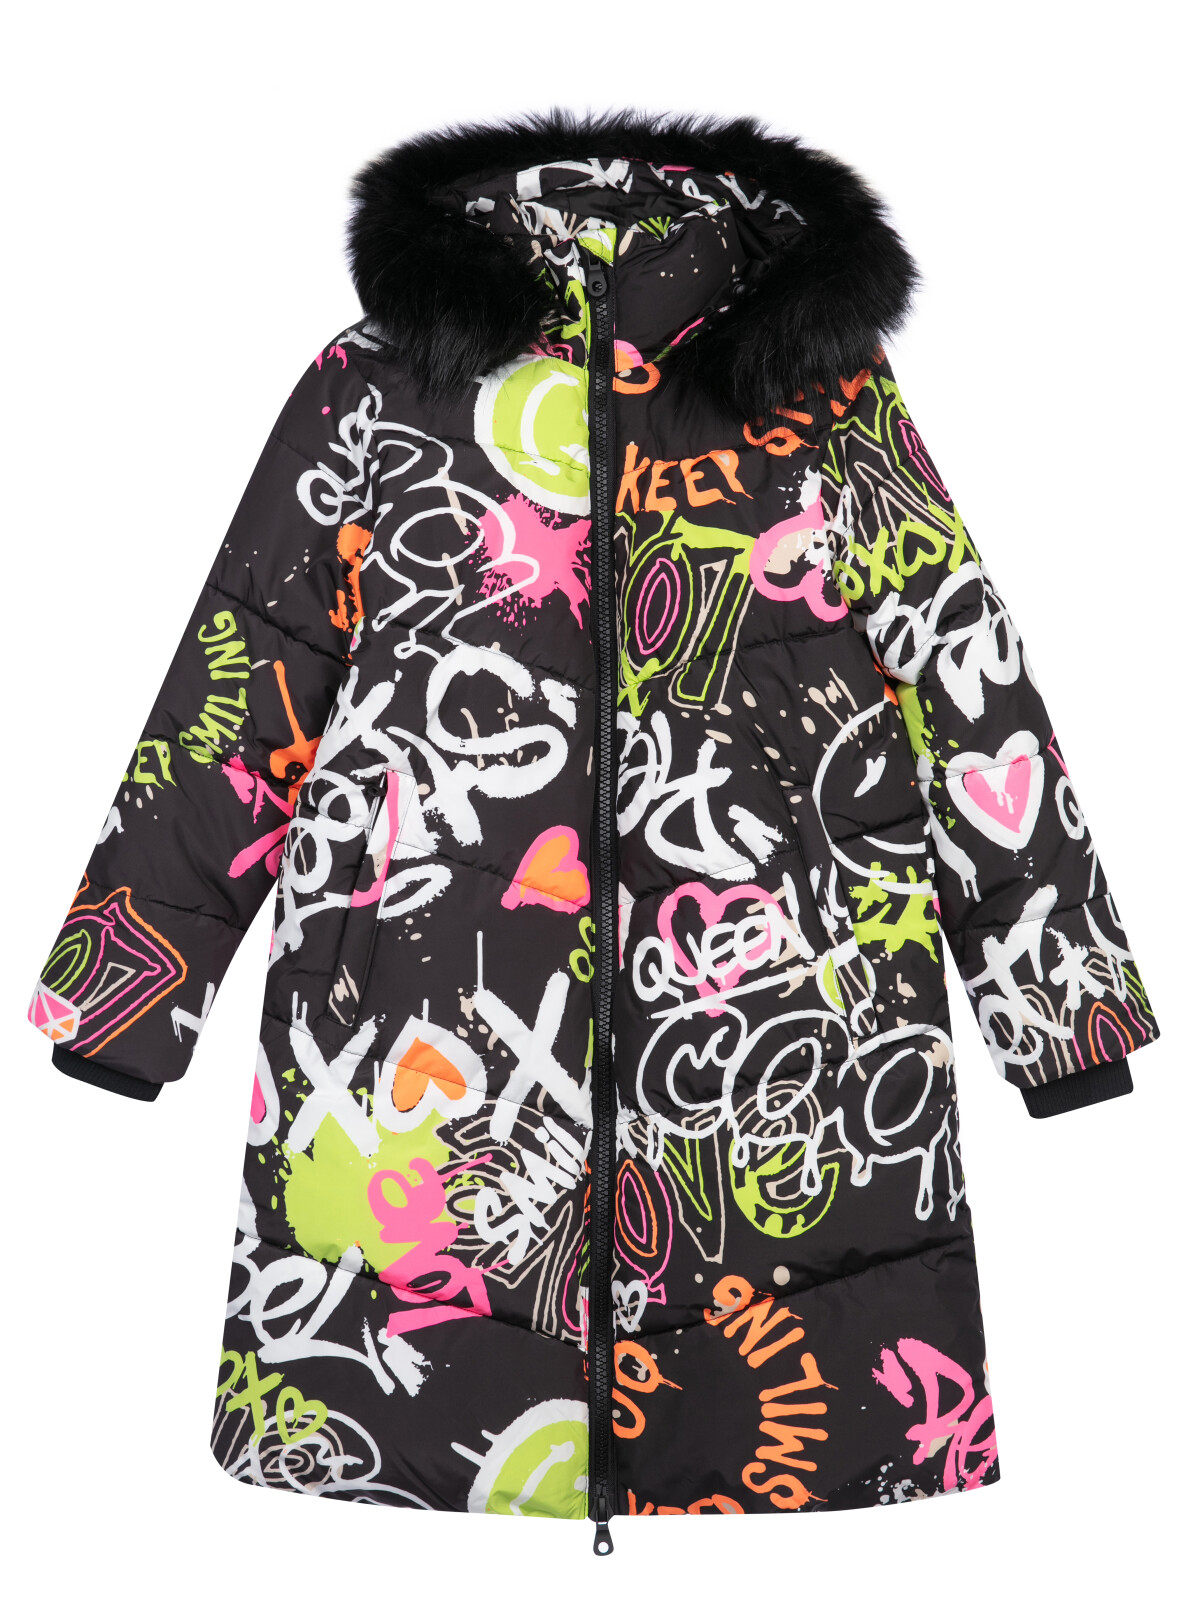 Пальто текстильное с полиуретановым покрытием для девочек PlayToday, цветной, 158